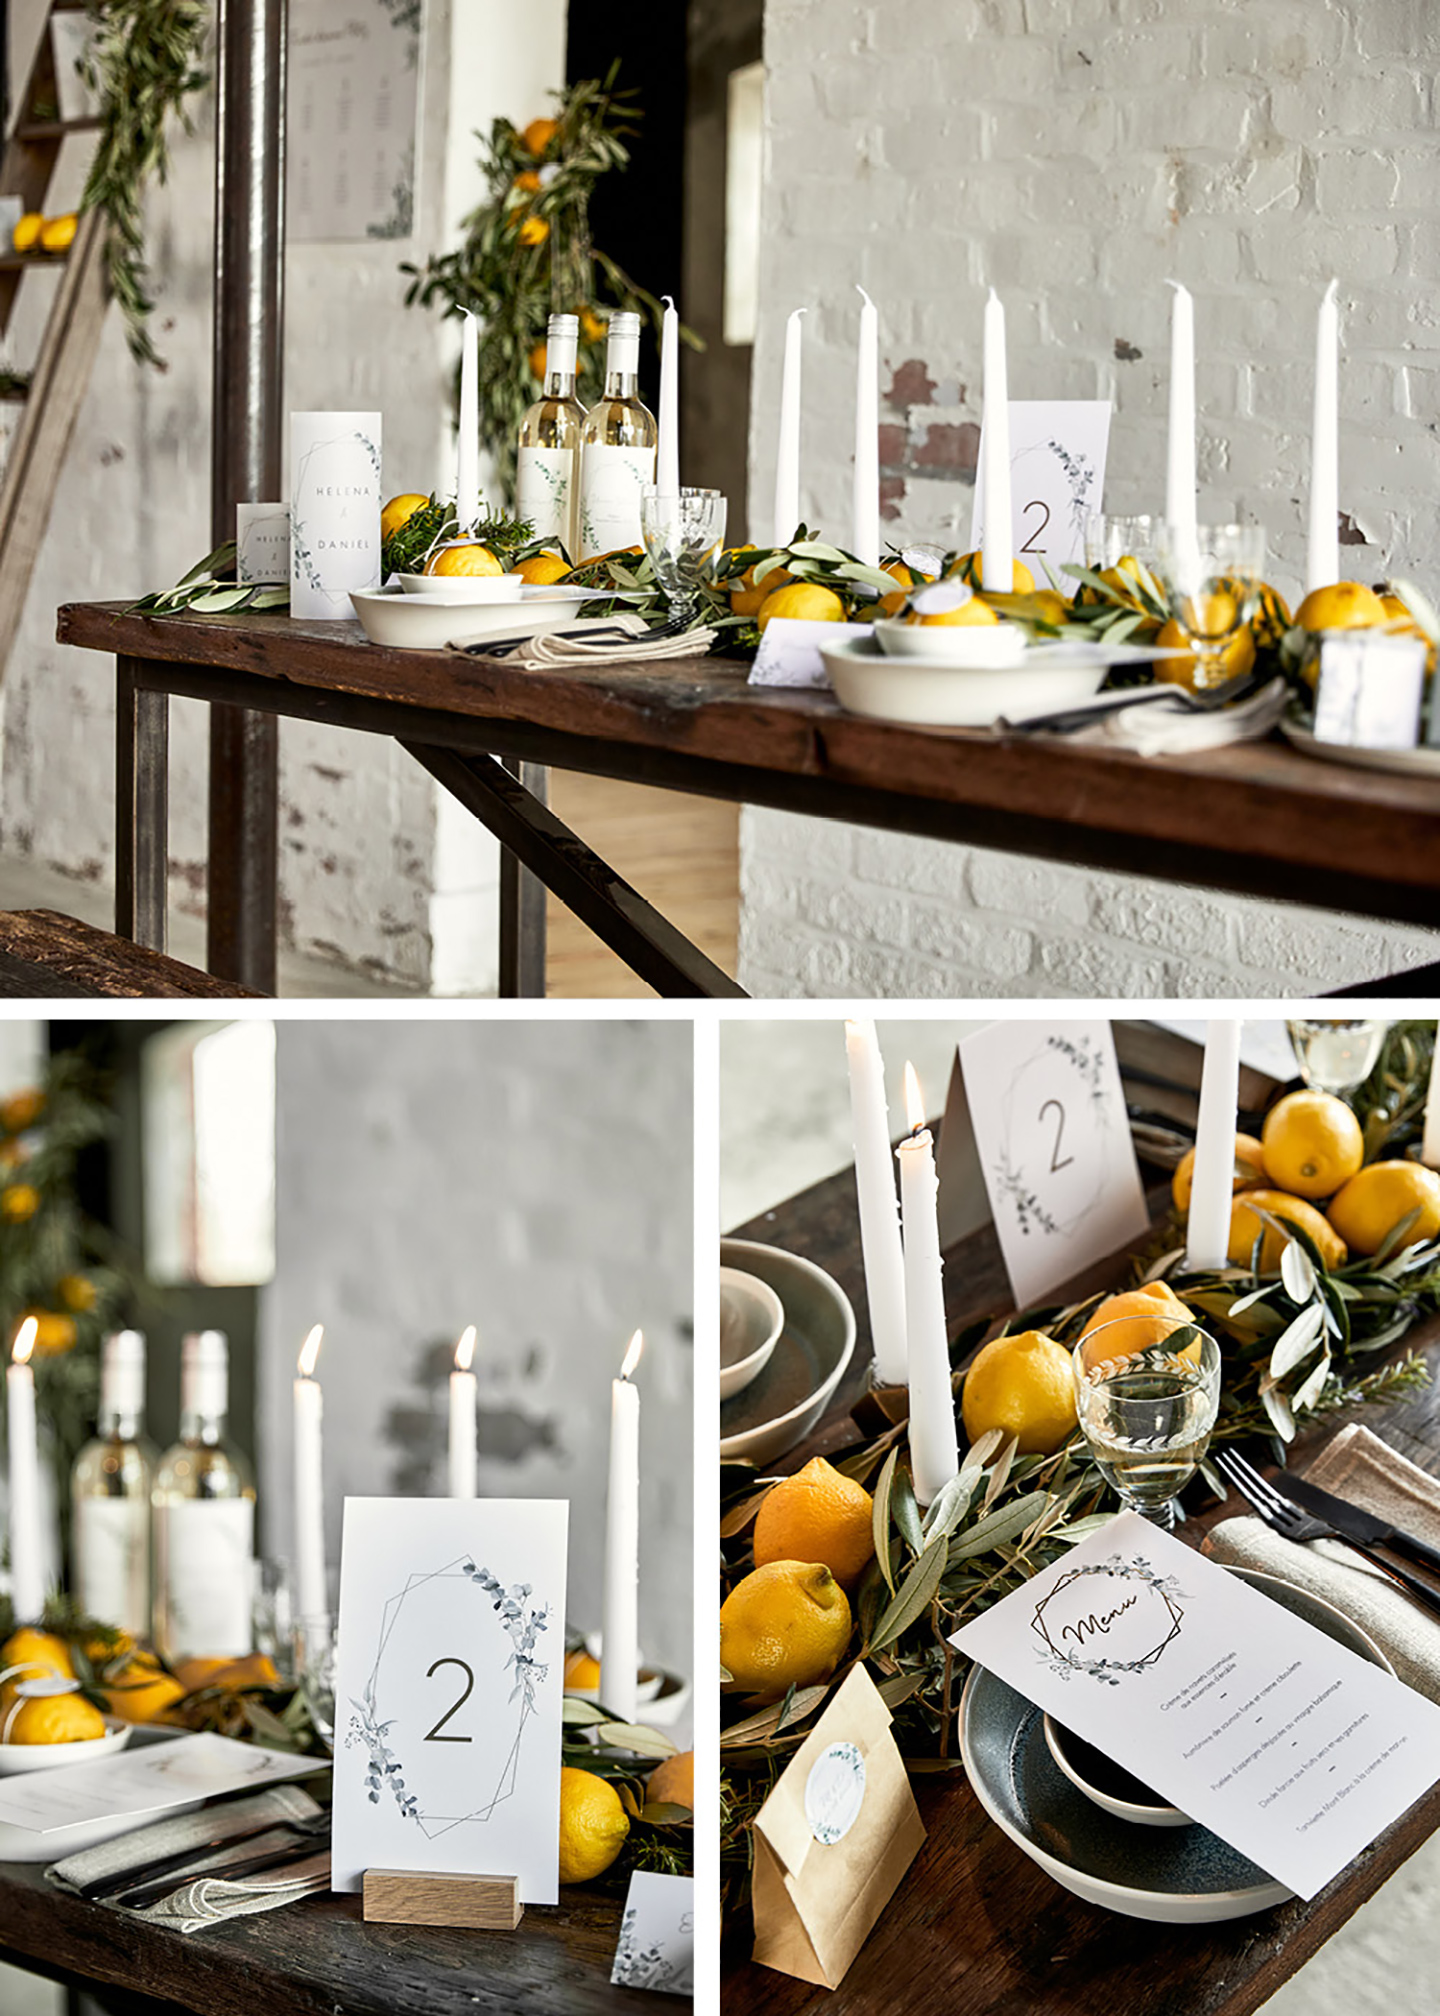 Zitronen auf dem Hochzeitstisch schmücken die gedeckte Hochzeitstafel im rustikalen Stil.